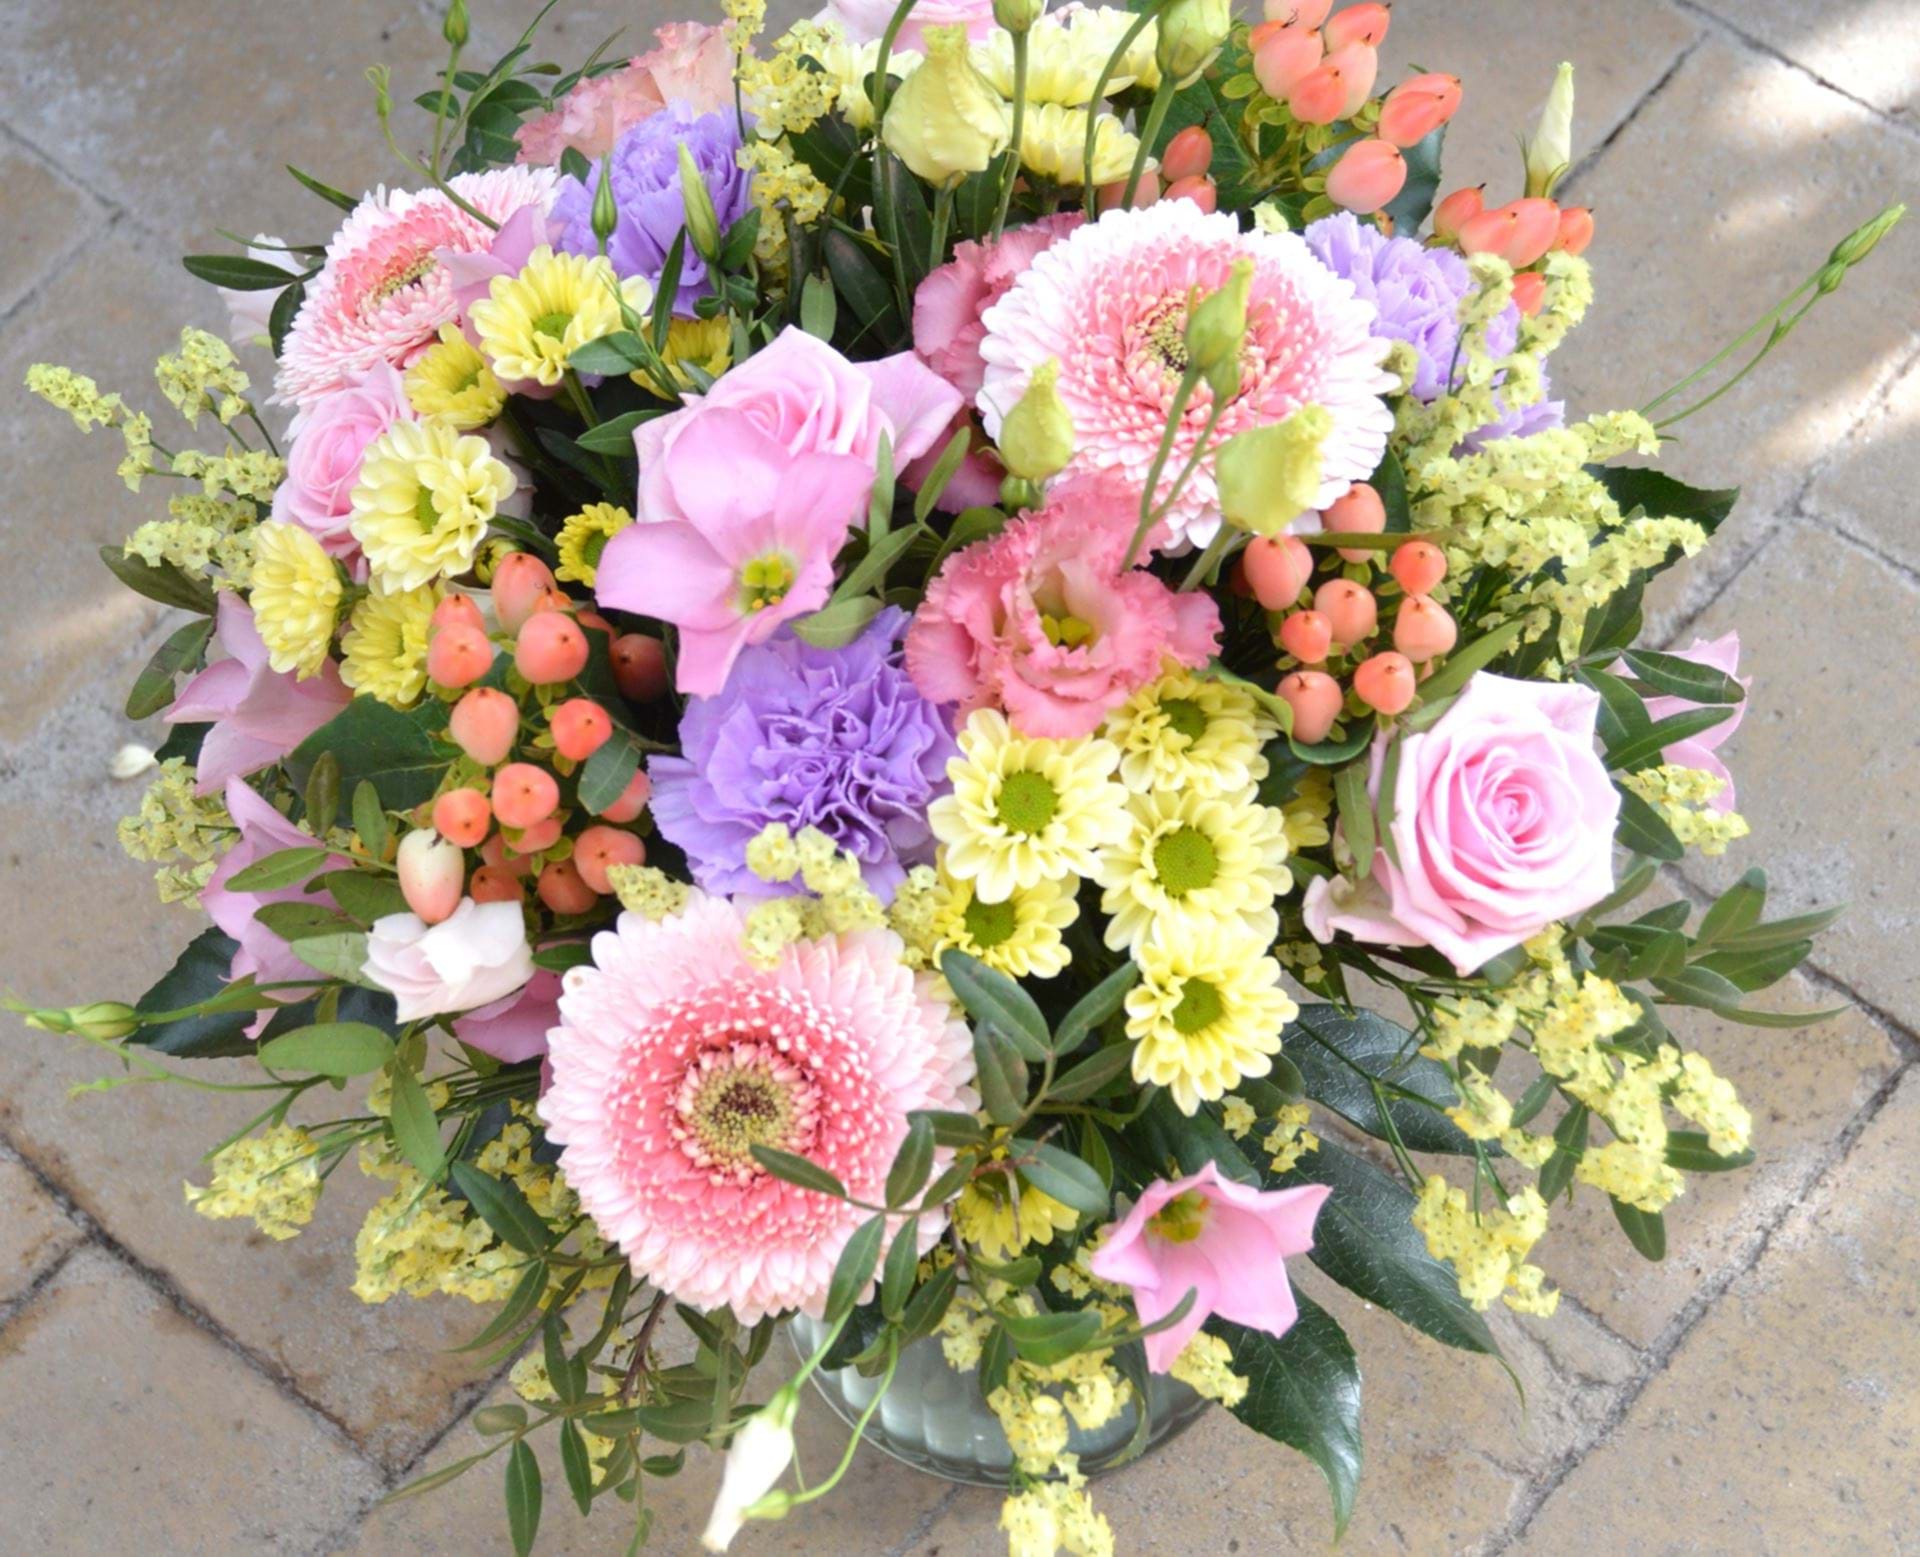 Billede af blomsterbuket i lyserøde, gule og lilla nuancer. 